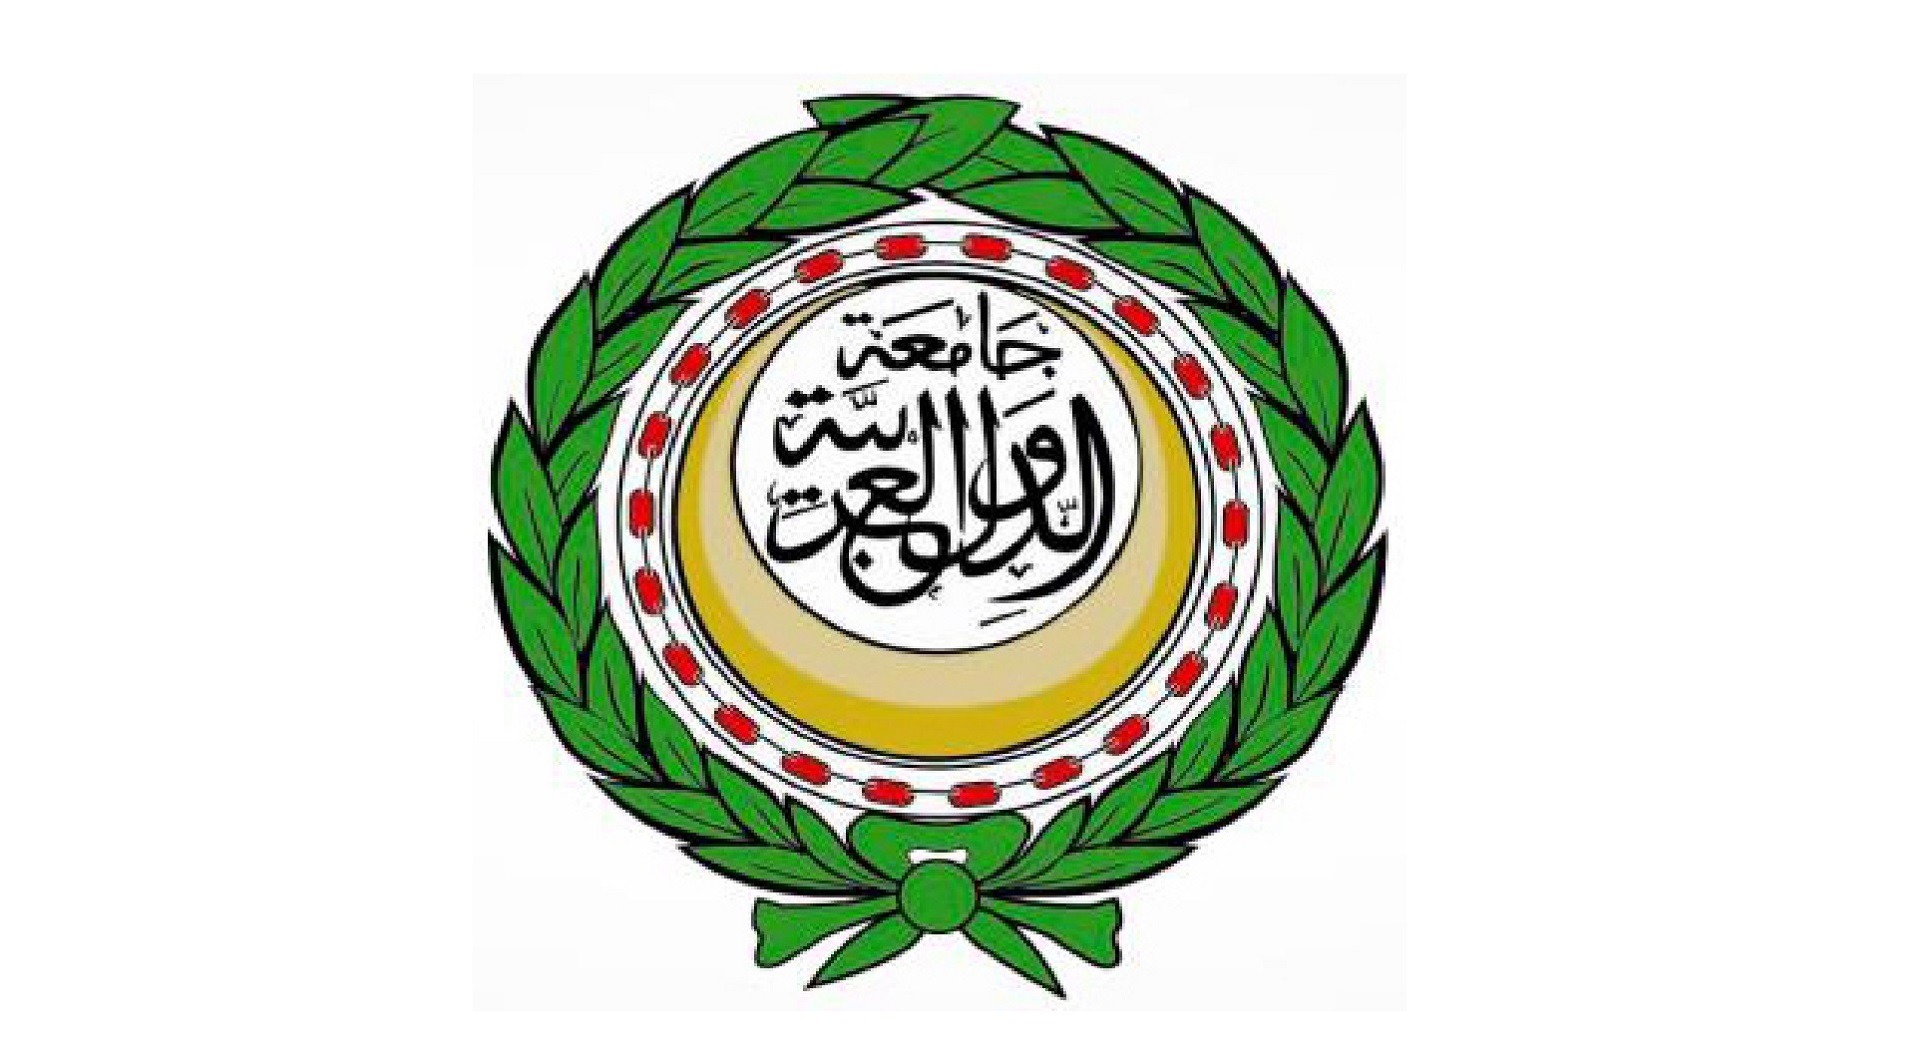 الجامعة العربية تدعو الى صون الكرامة الانسانية لجميع المهاجرين واللاجئين                                                                                                                                                                                  